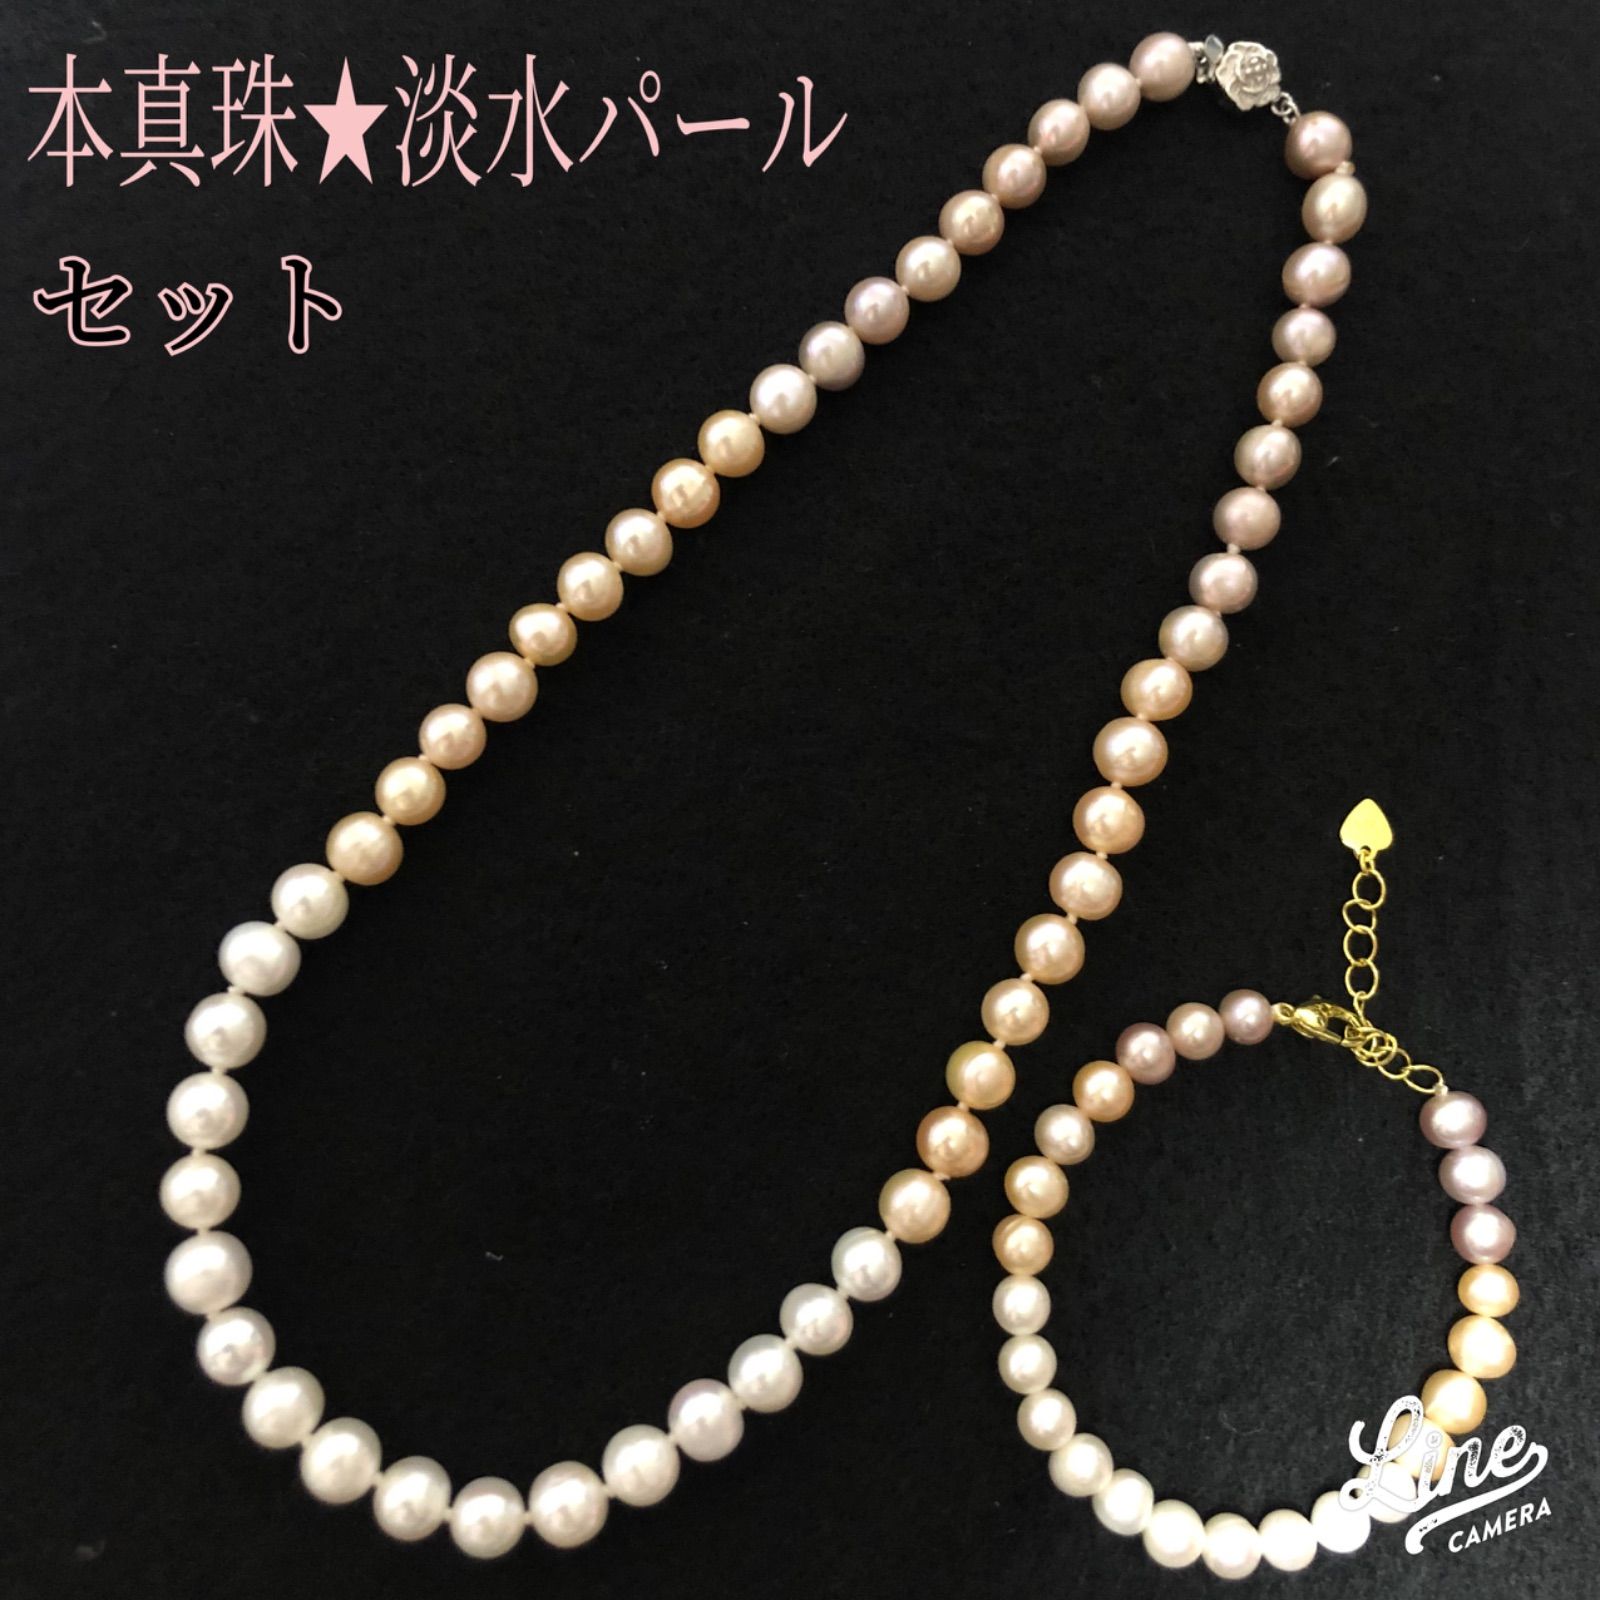 【新品】本真珠 淡水パールネックレスu0026ブレスレットセット